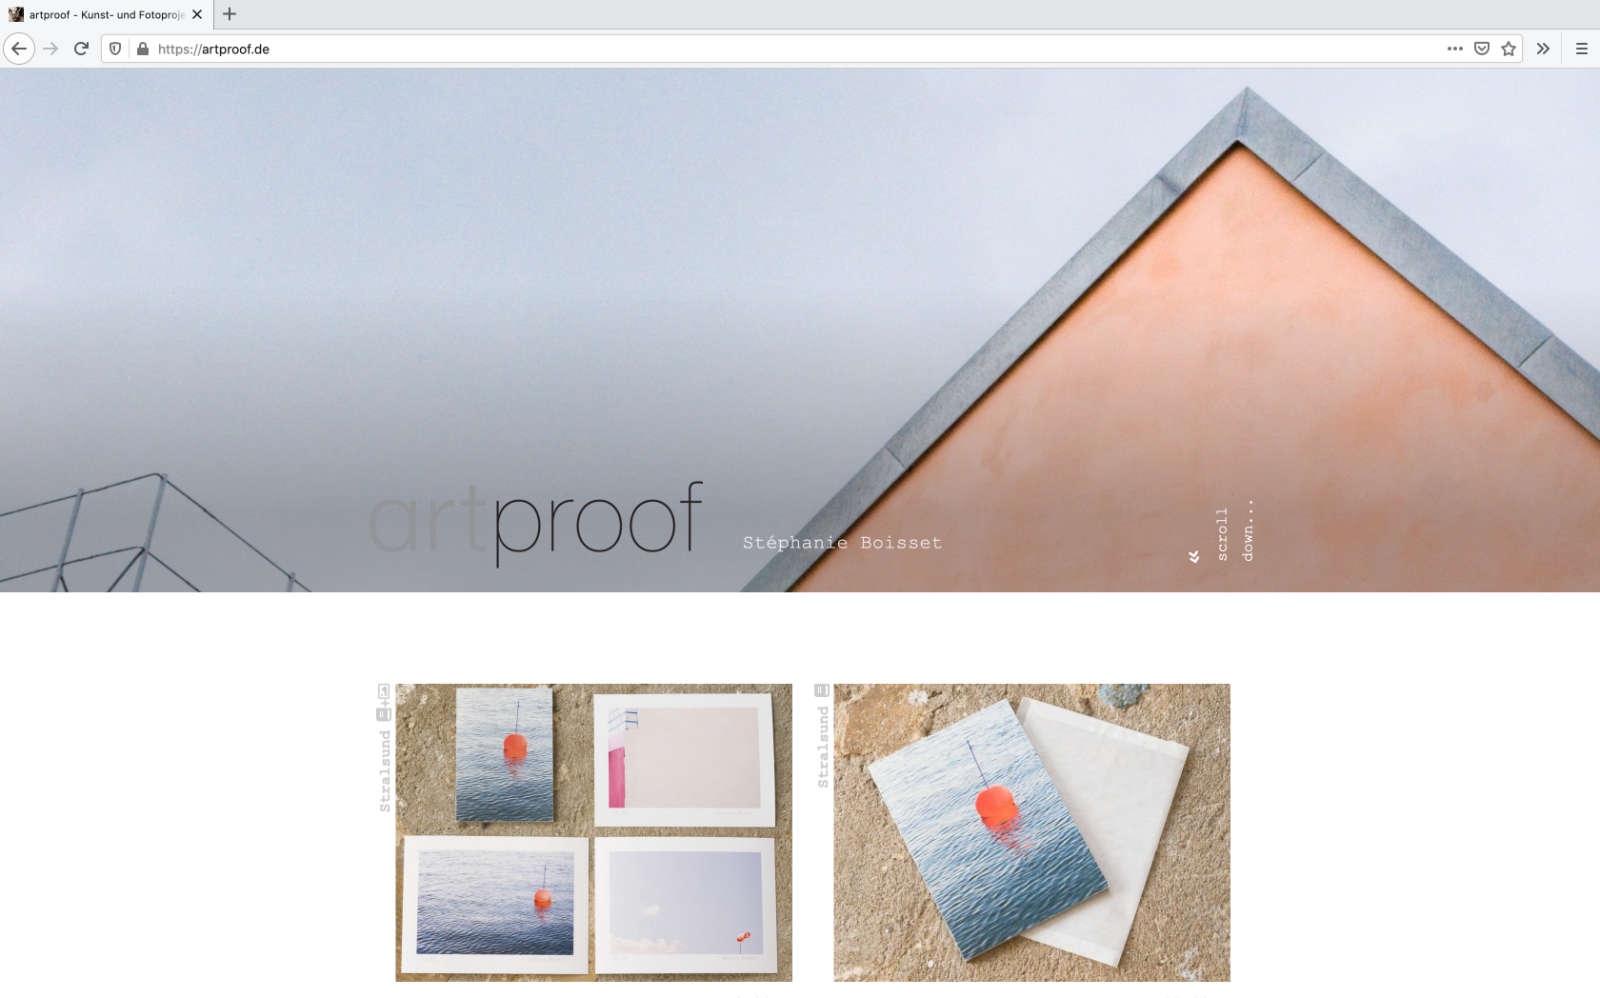 Website artproof, ein Projekt von Stéphanie Boisset